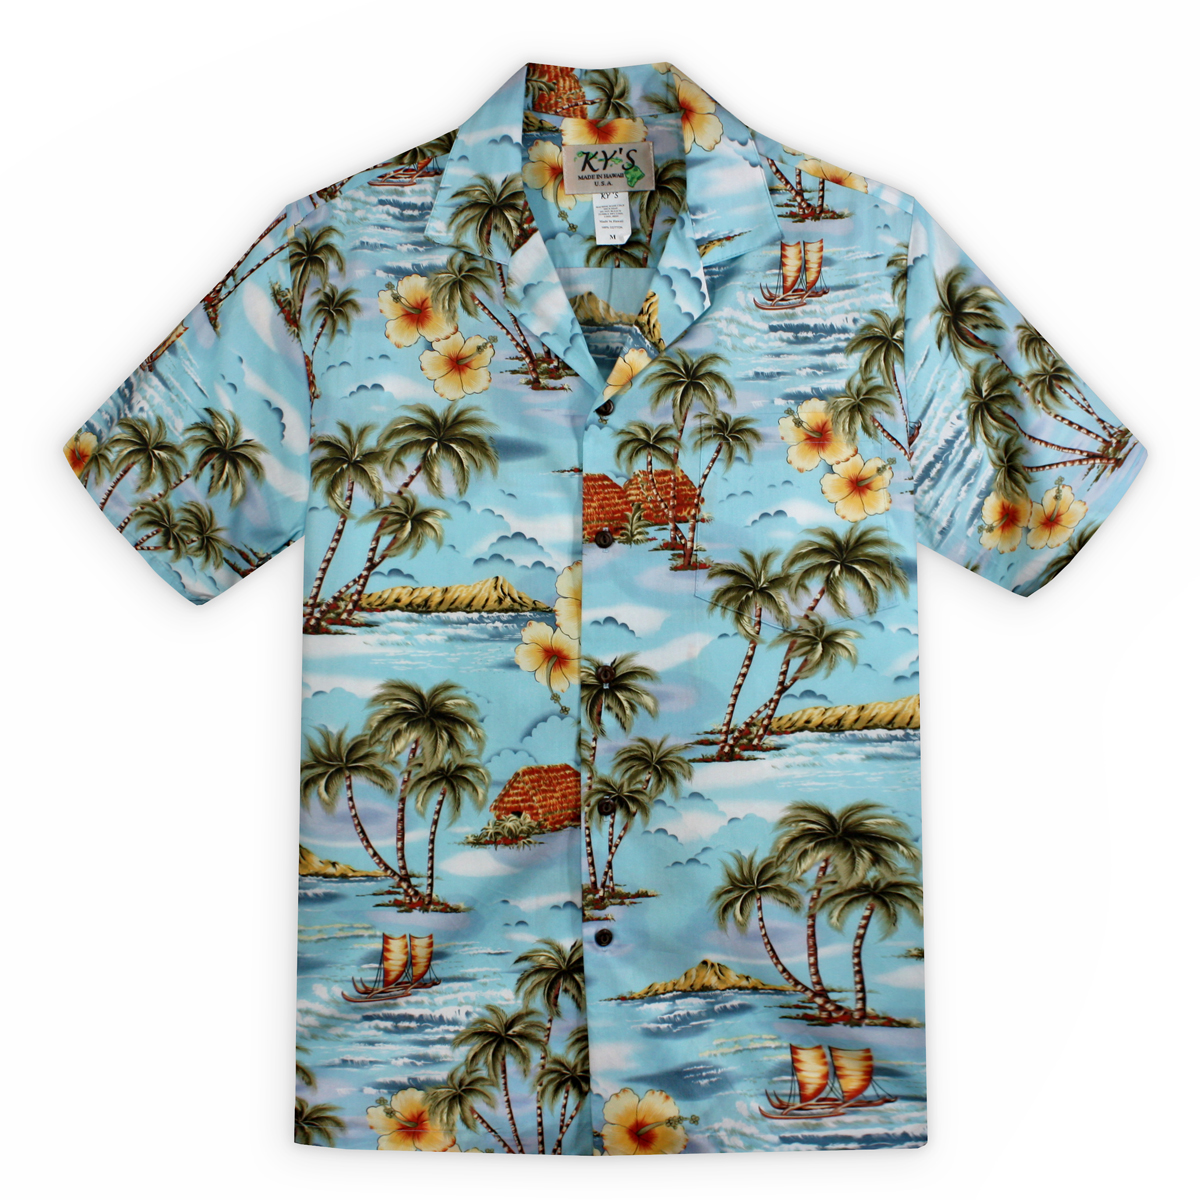 Hawaiian Shirt Printable - Printable World Holiday